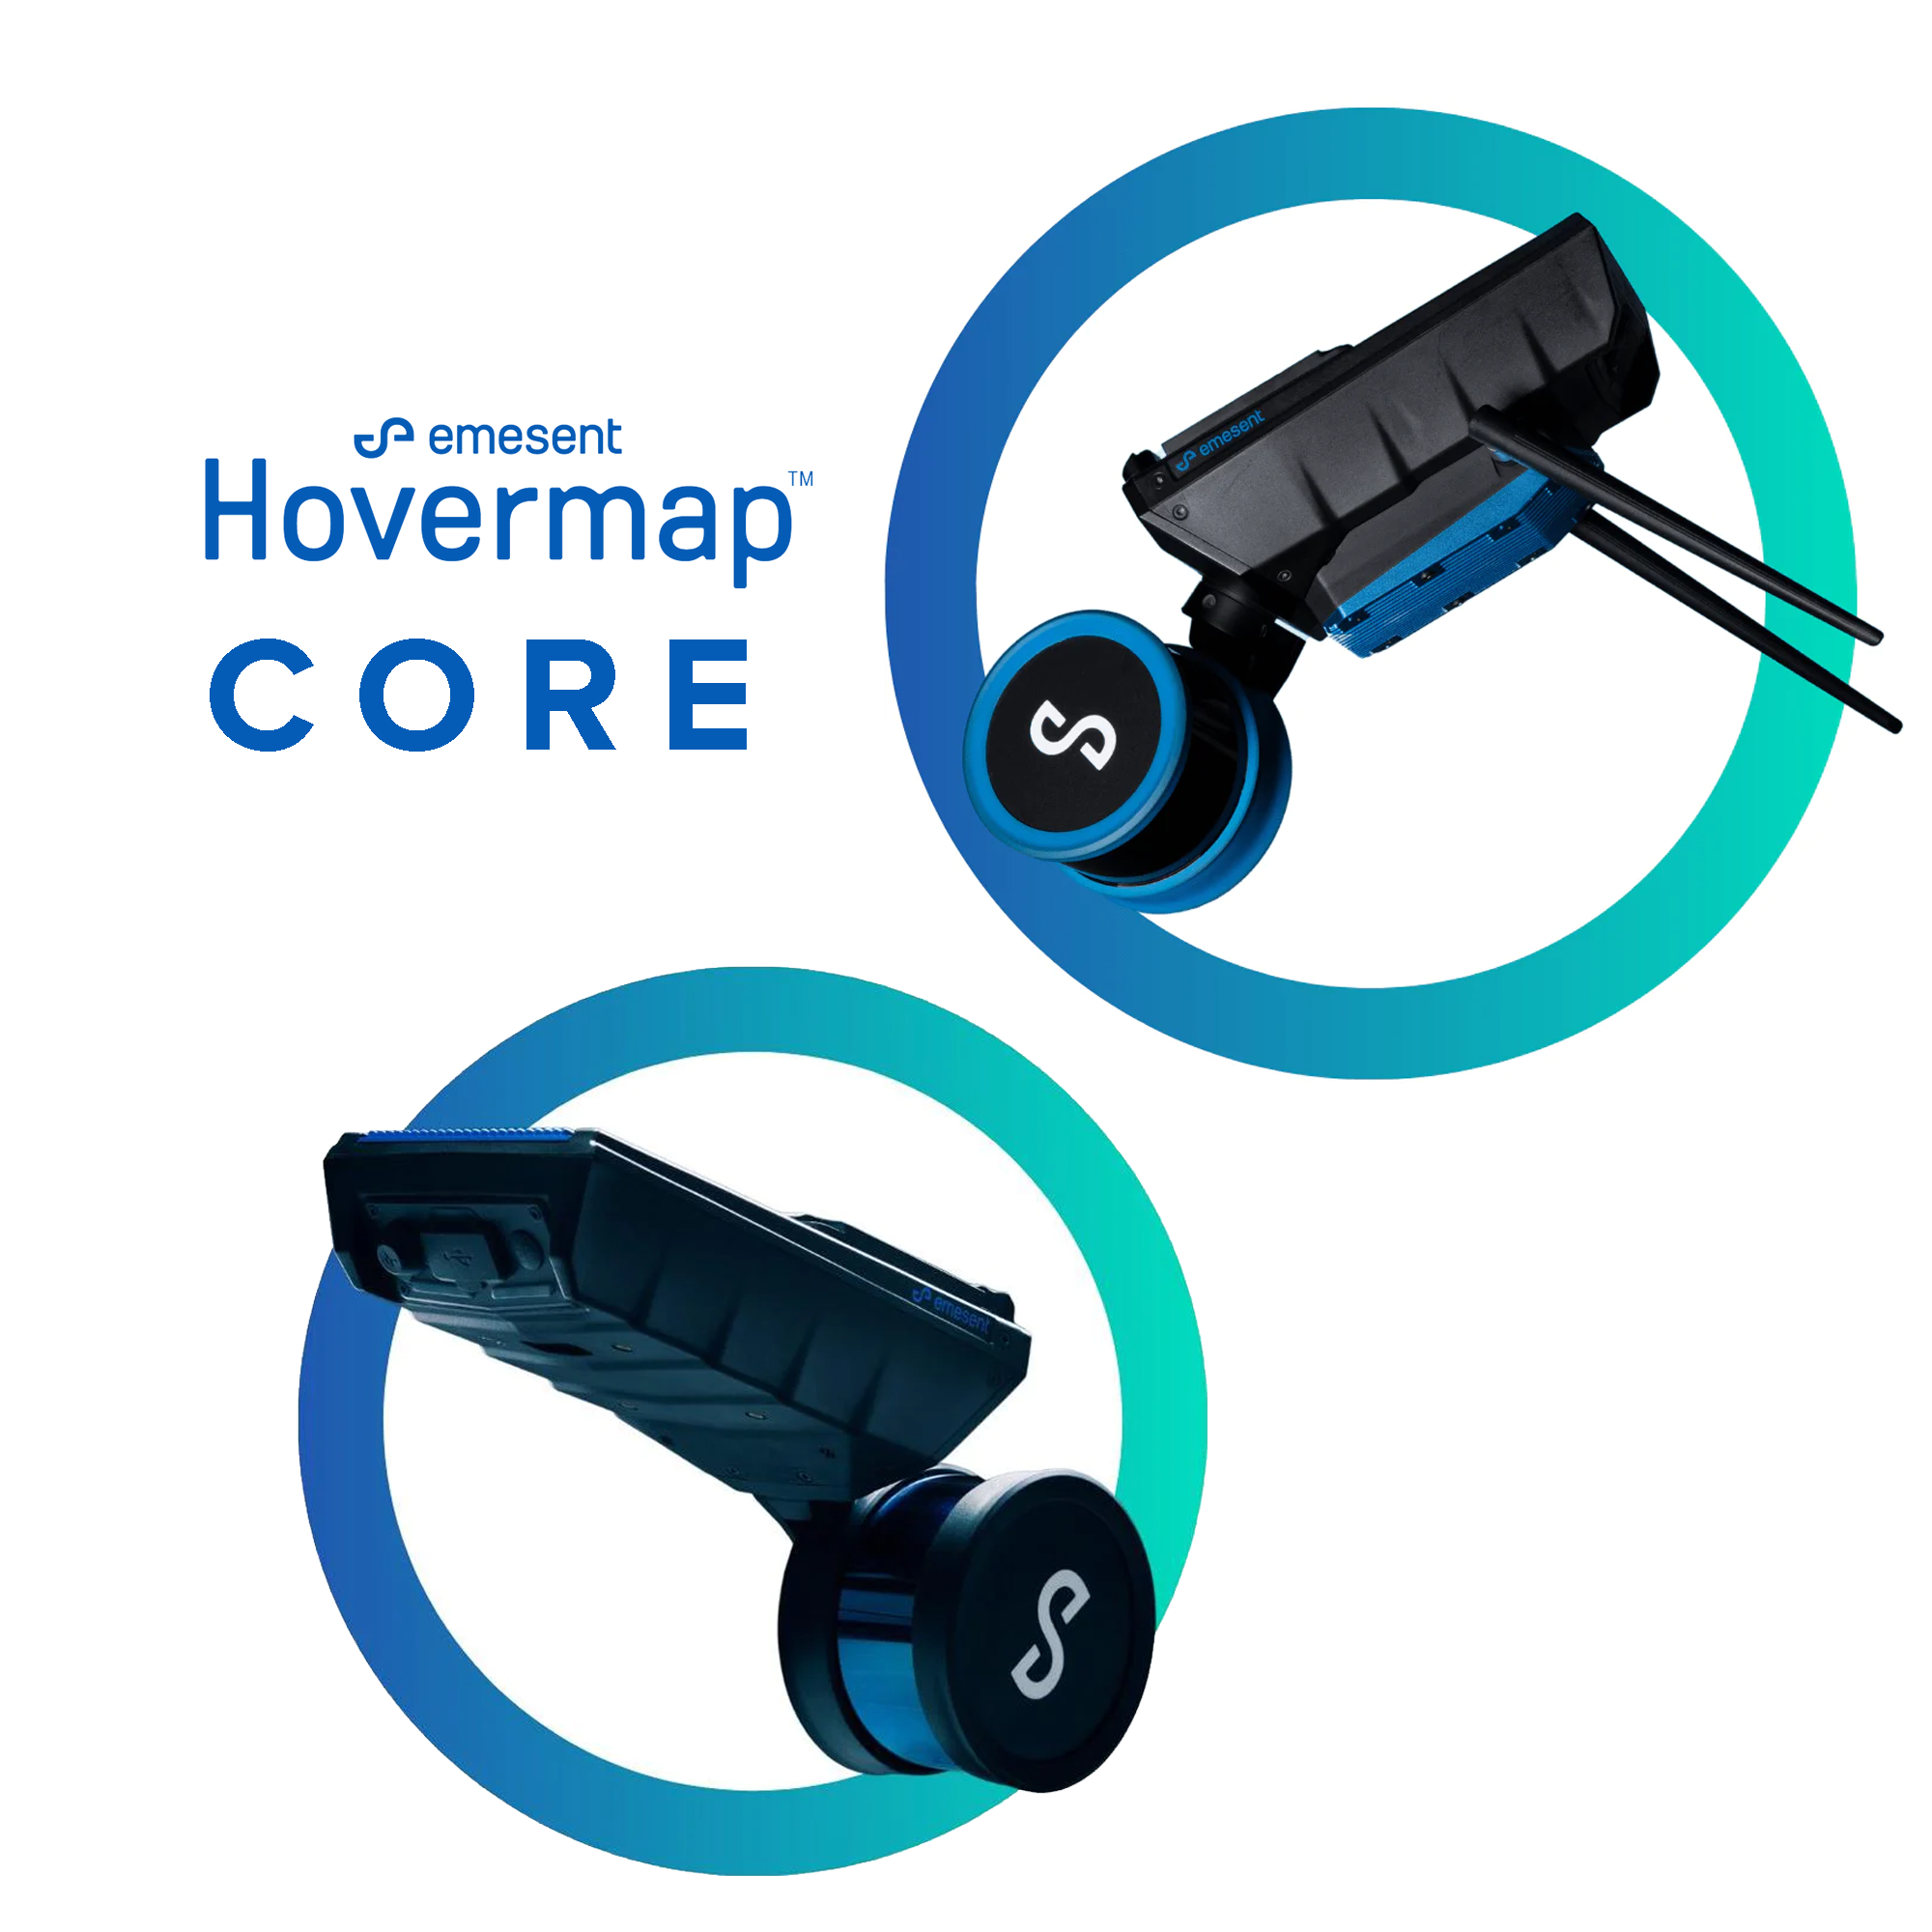 Hovermap Core